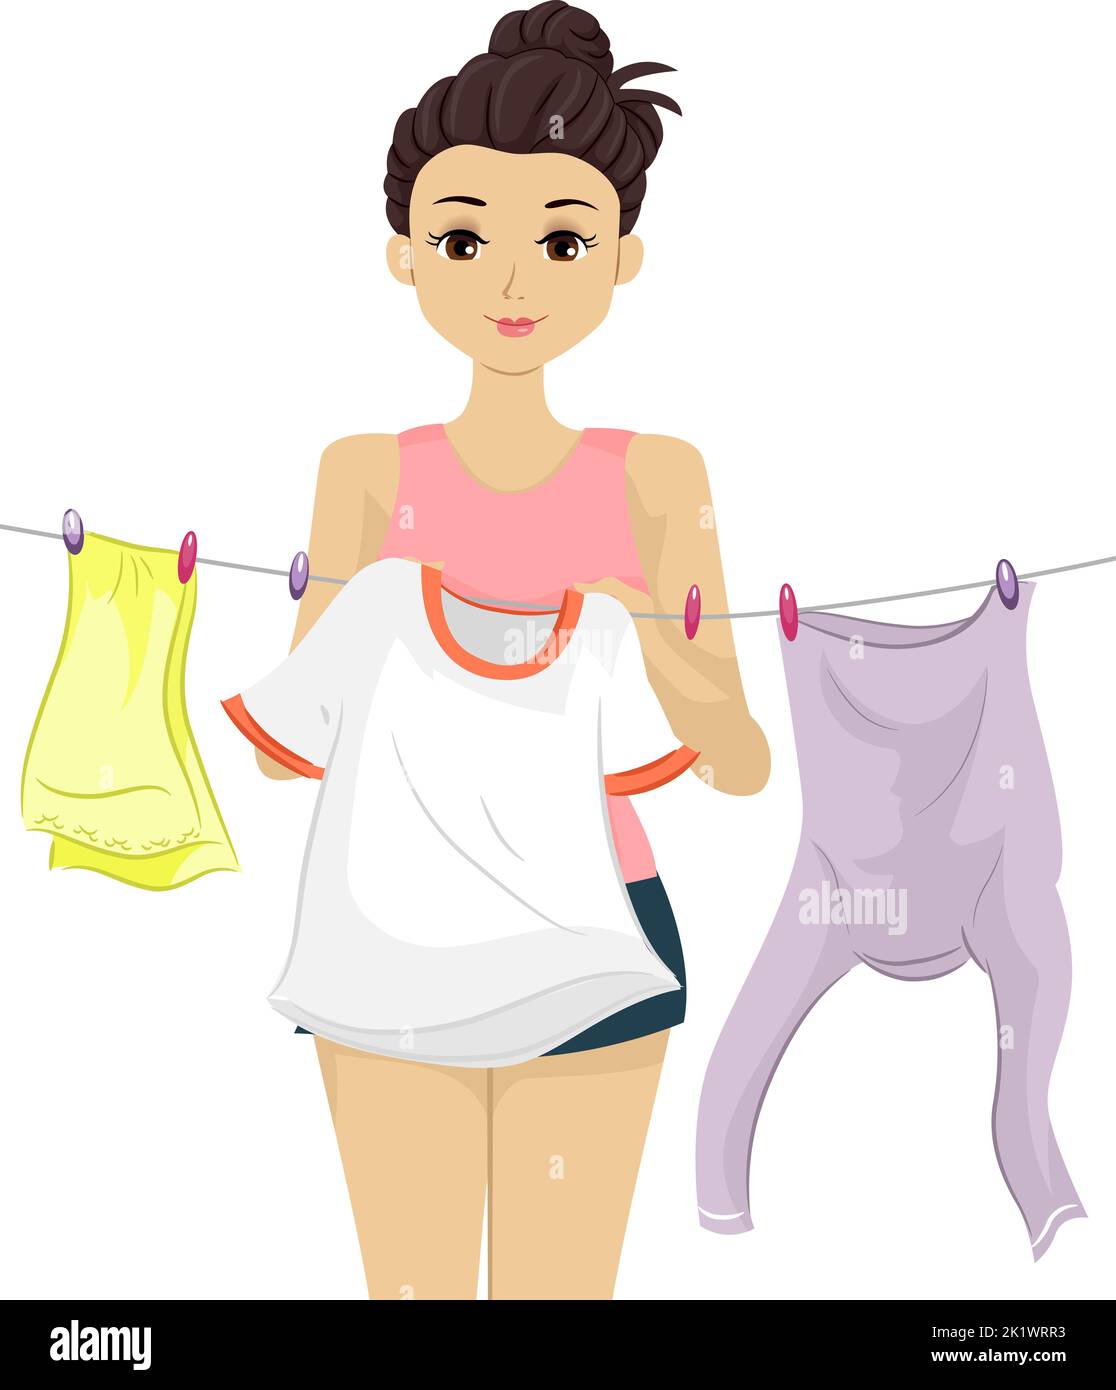 Illustrazione di ragazza adolescente che appendere vestiti appena lavati su Clothesline Foto Stock